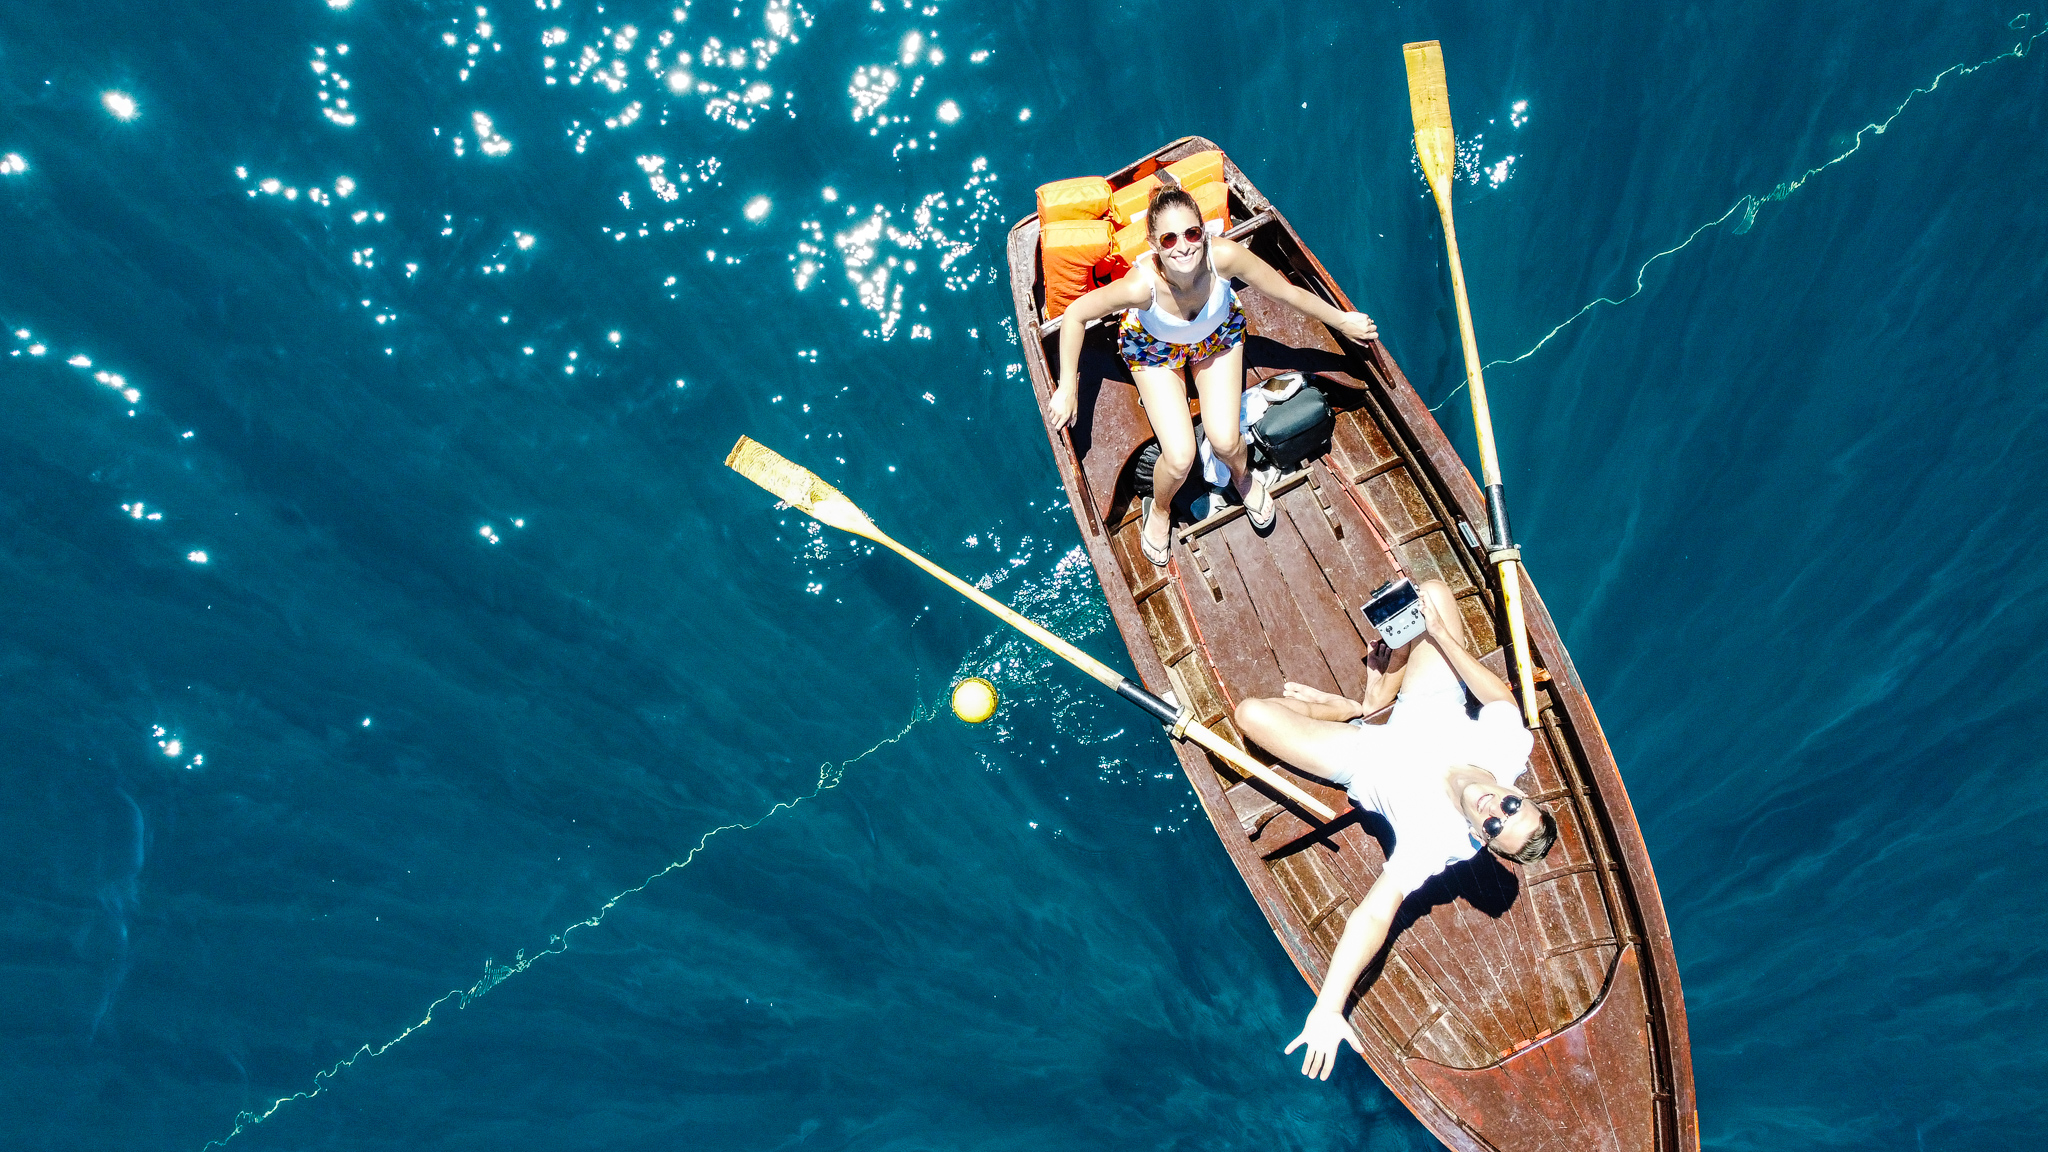 Lake Bled row boat